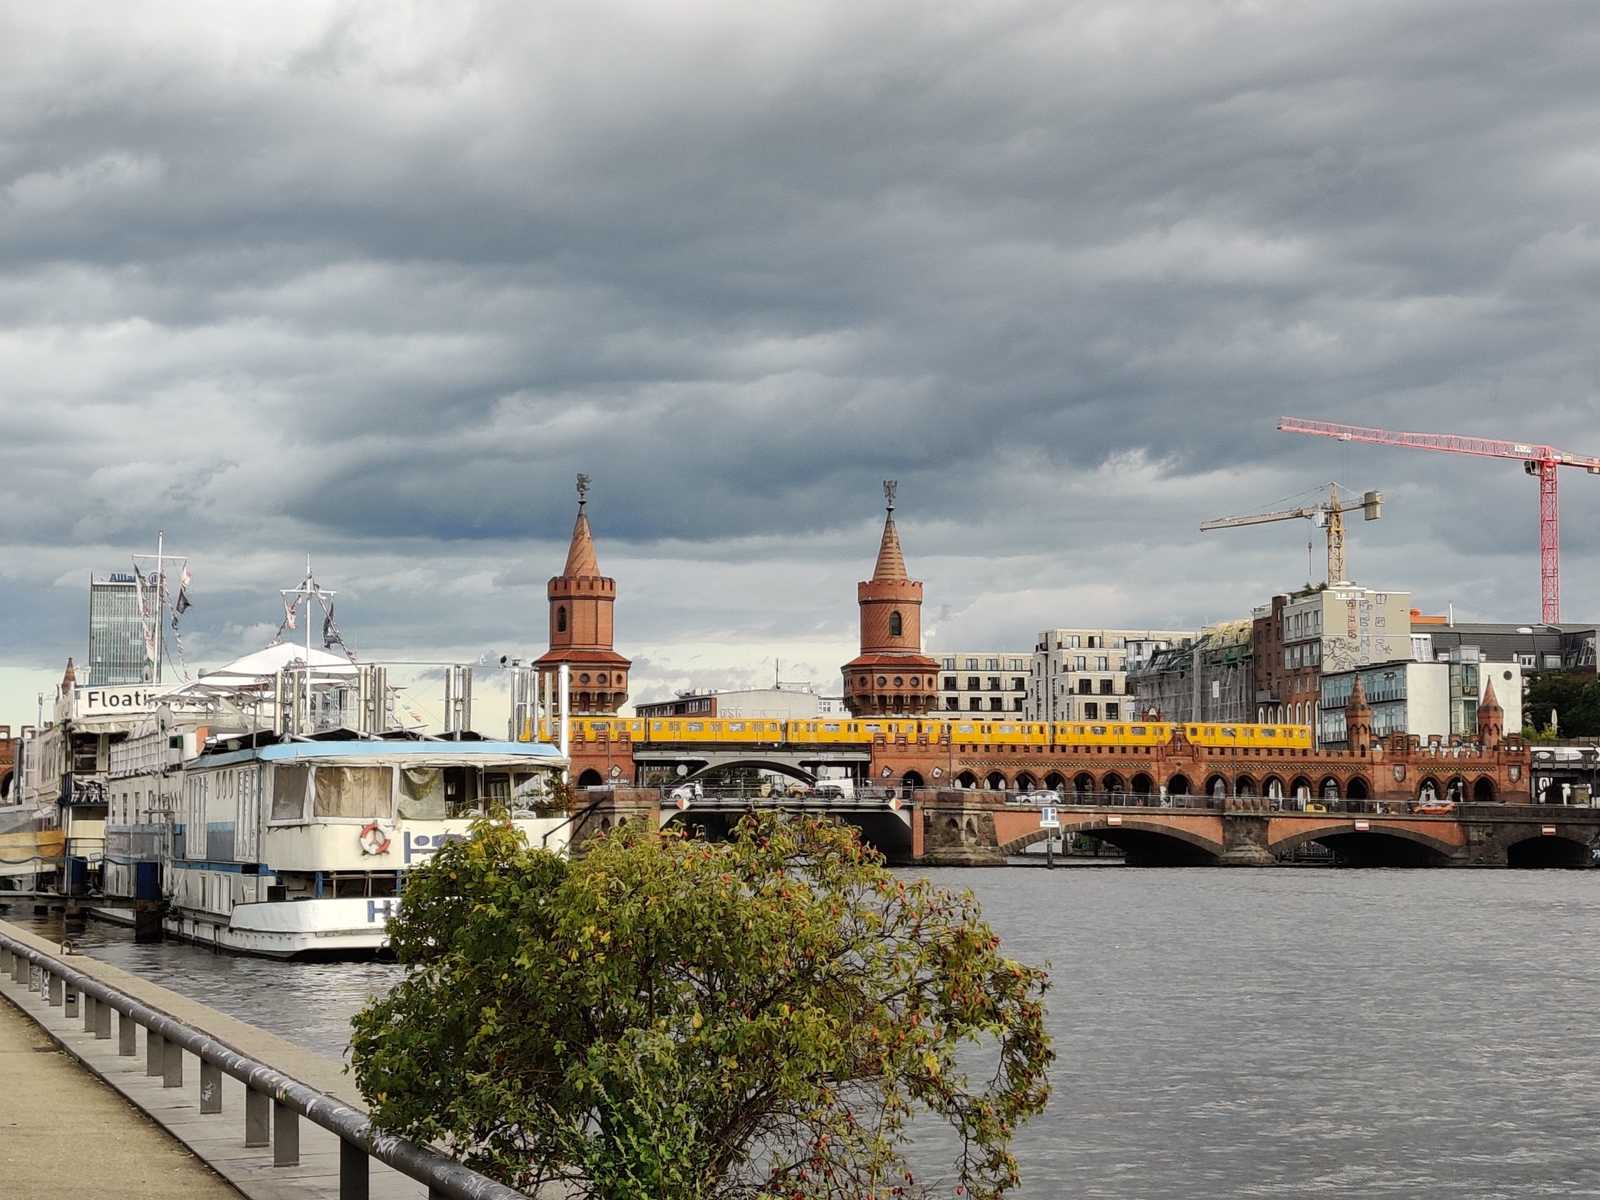 Blick auf die Oberbaumbrücke in Berlin, vom Spree-Ufer aus. Ein weißes Boot, welches eine Touristenunterkunft ist, liegt am Ufer an. Die gelben U-Bahnwägen der BVG ziehen auf der Brücke durch das Bild. Der Himmel ist von grauen Wolken bedeckt.